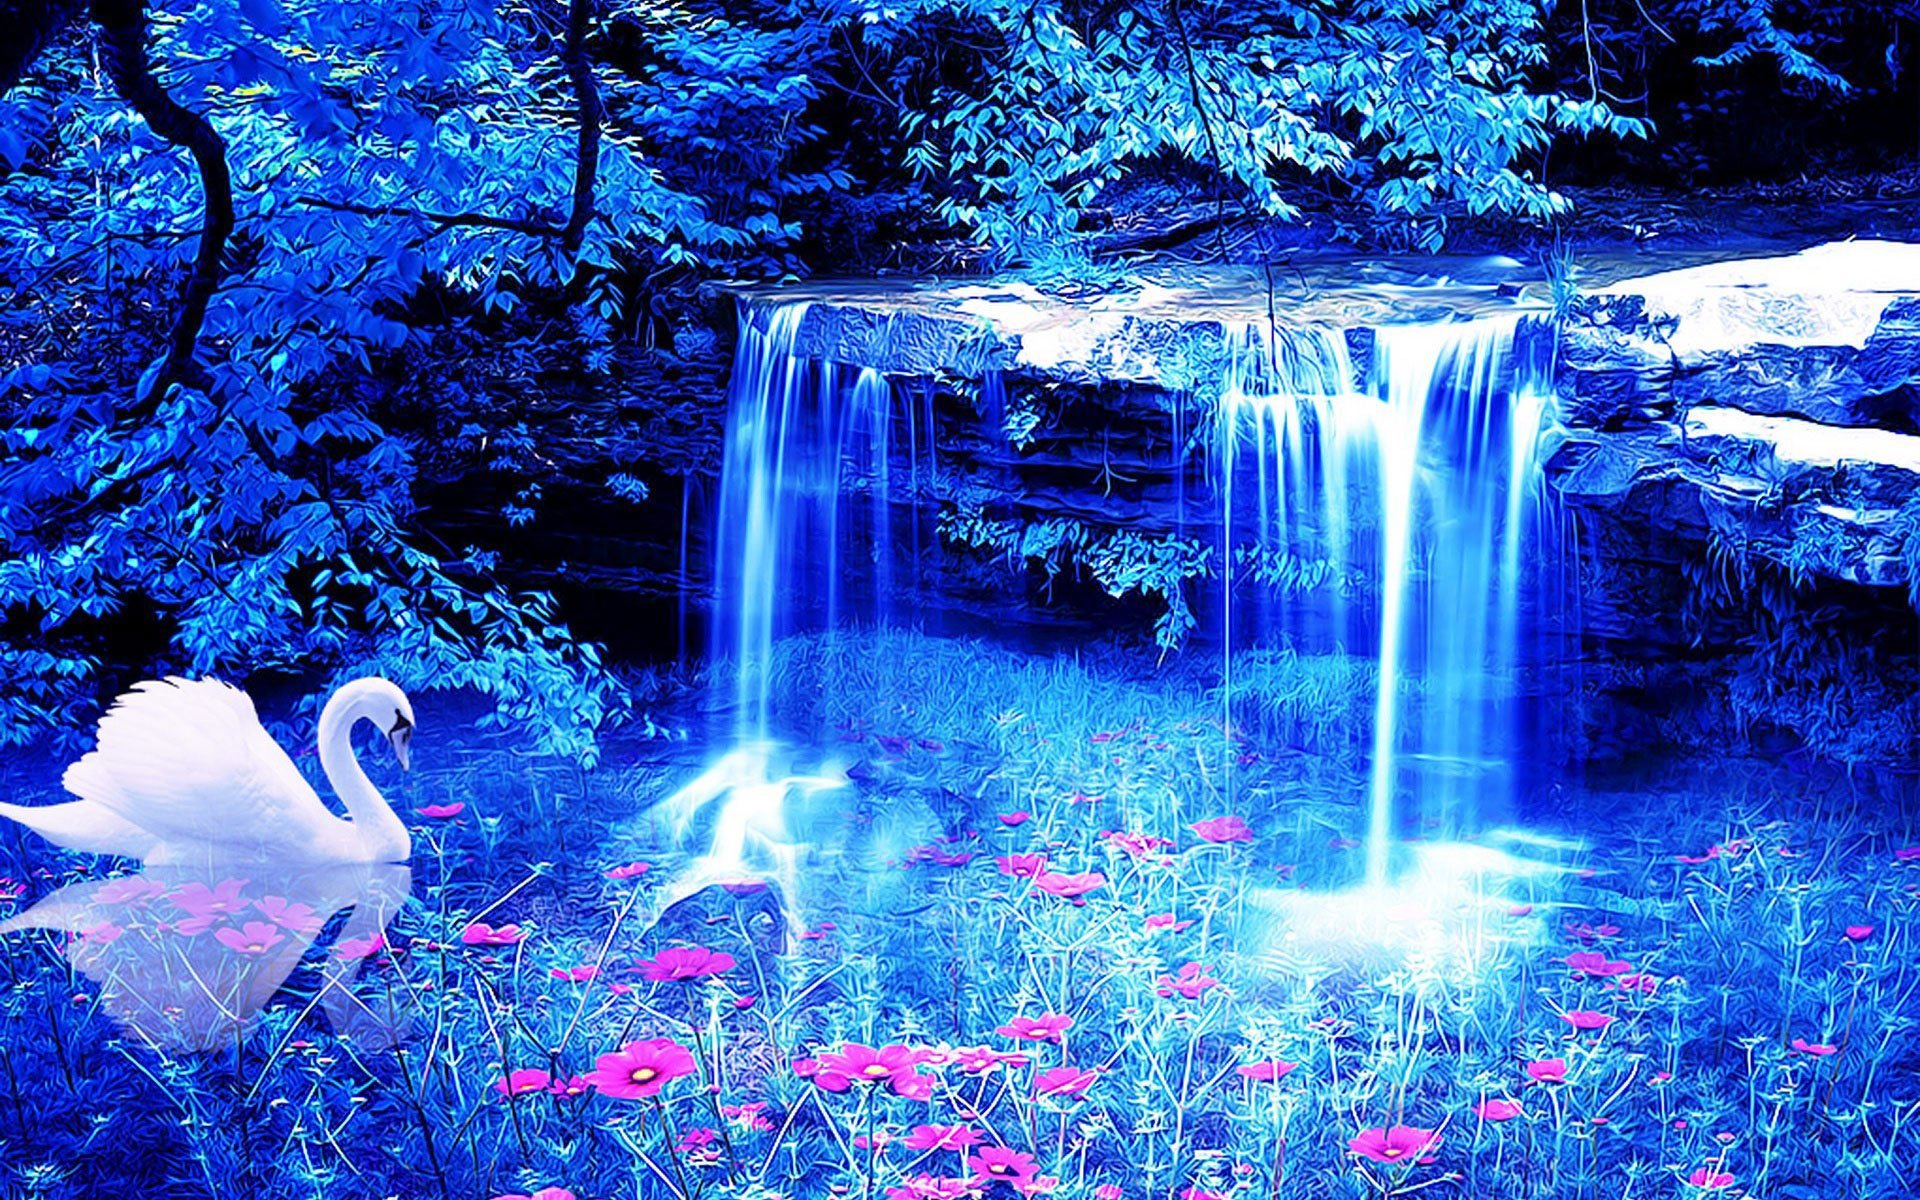 Обои на телефон самые красивые в мире. Живая природа водопады. Сказочный водопад. Красивые картинки. Красивые картины.